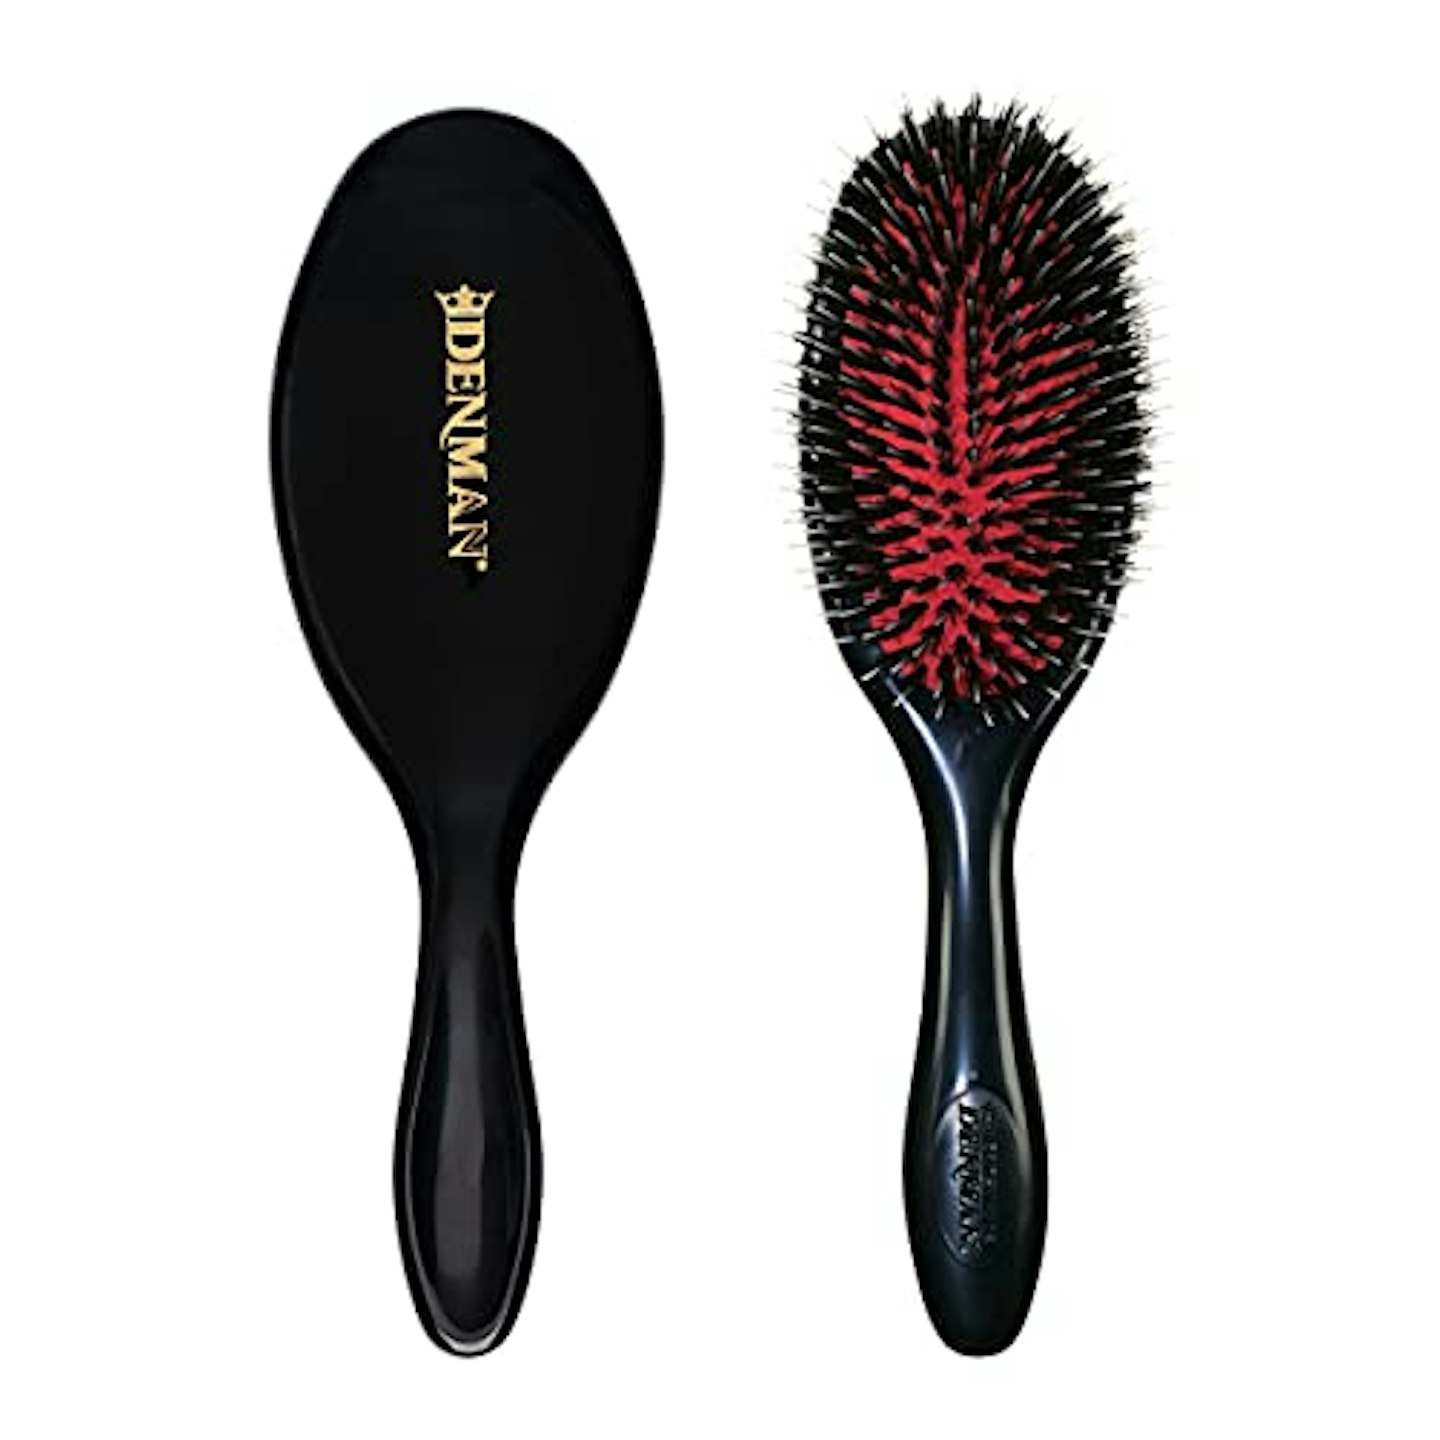 Denman D81M Medium Nylon/Bristle Cushion Hairbrush